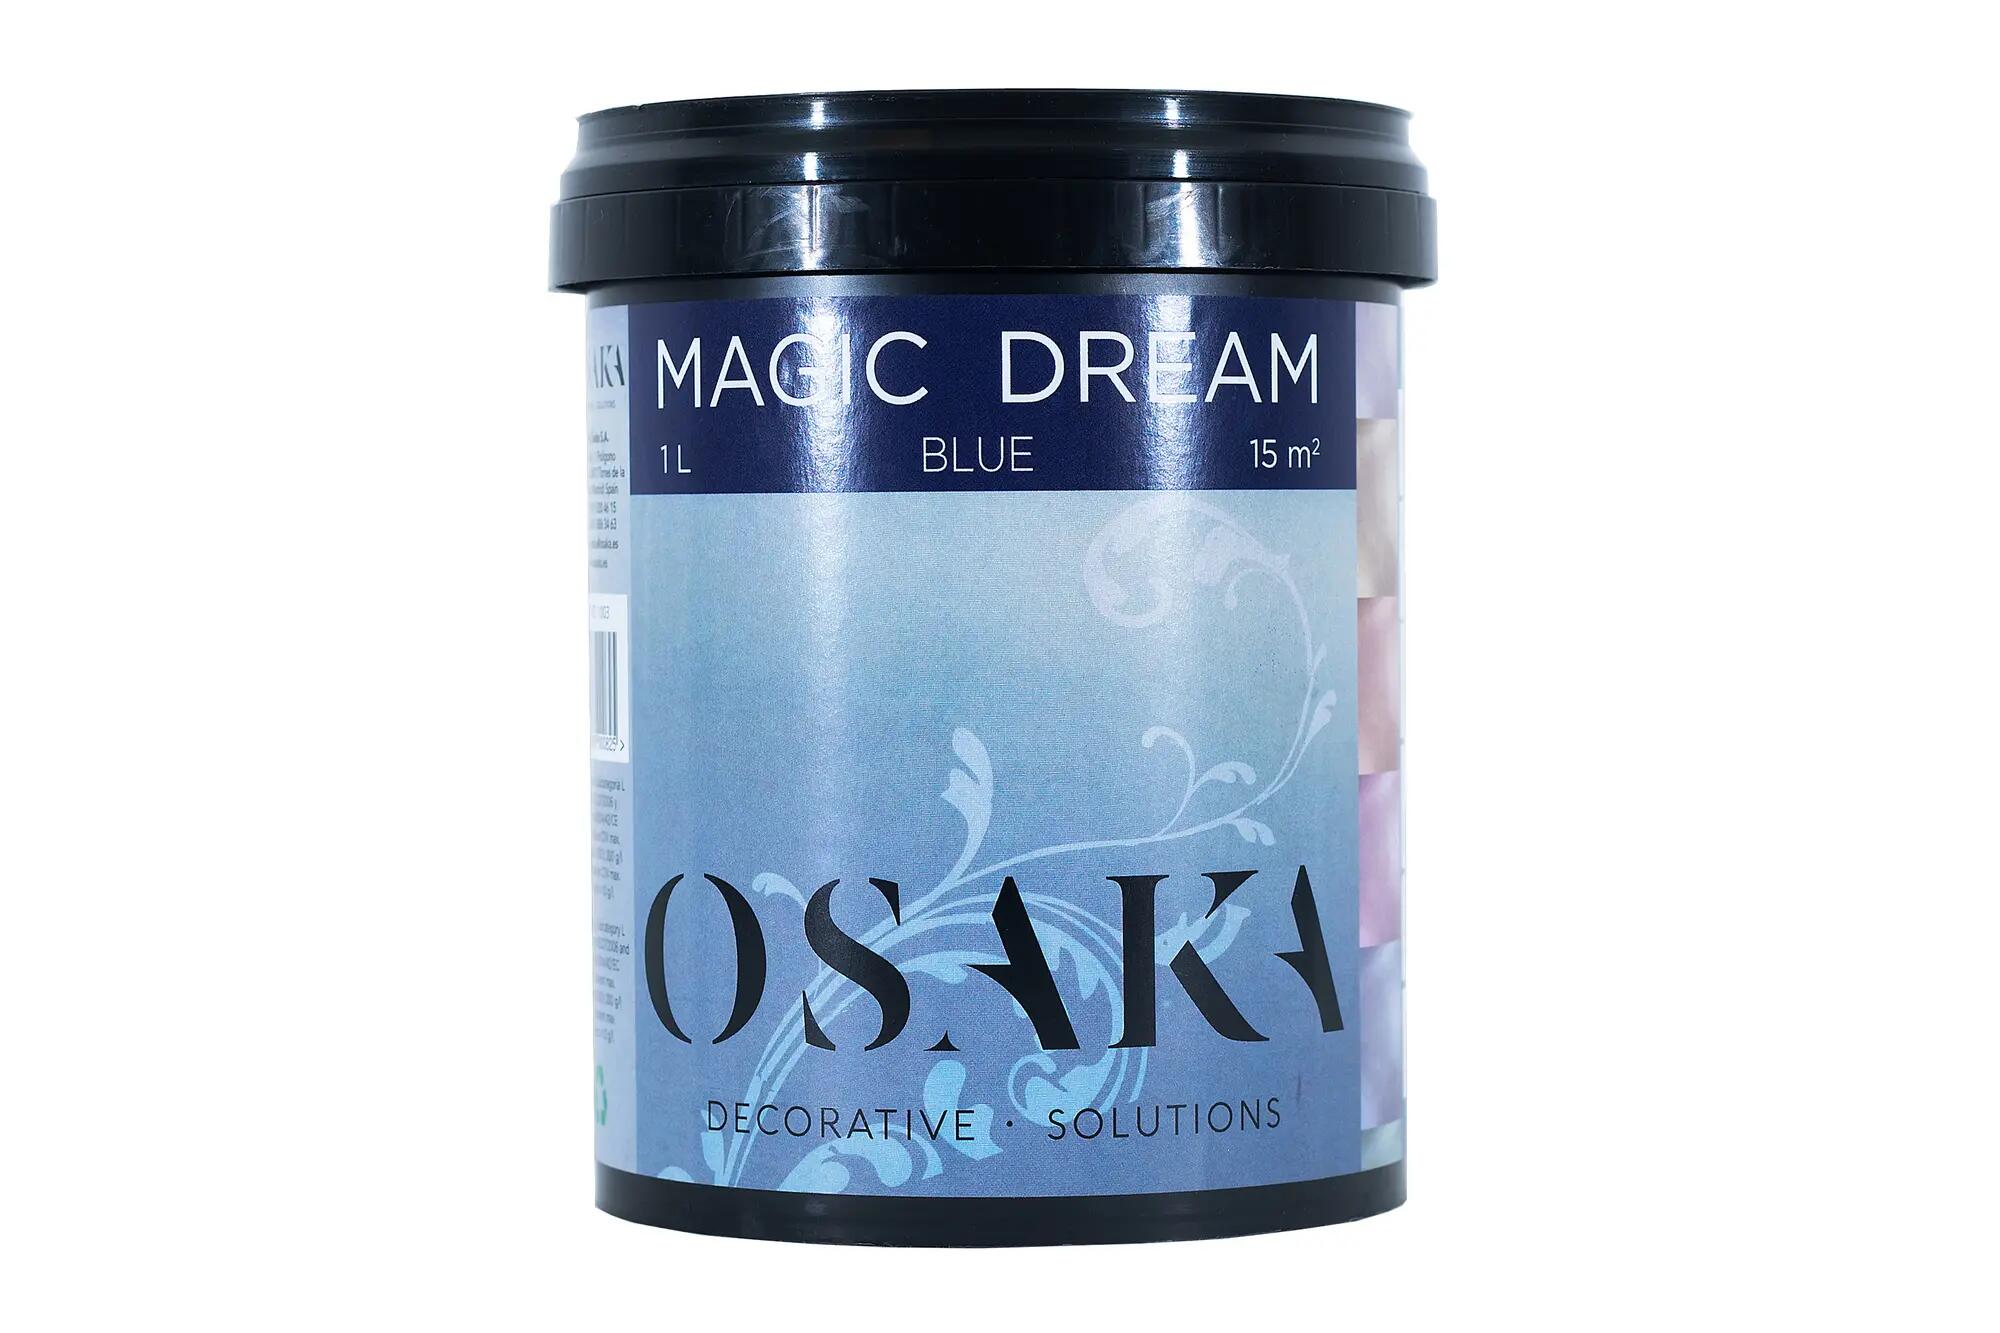 Pintura decorativa con efectos magic dream osaka 1l blue